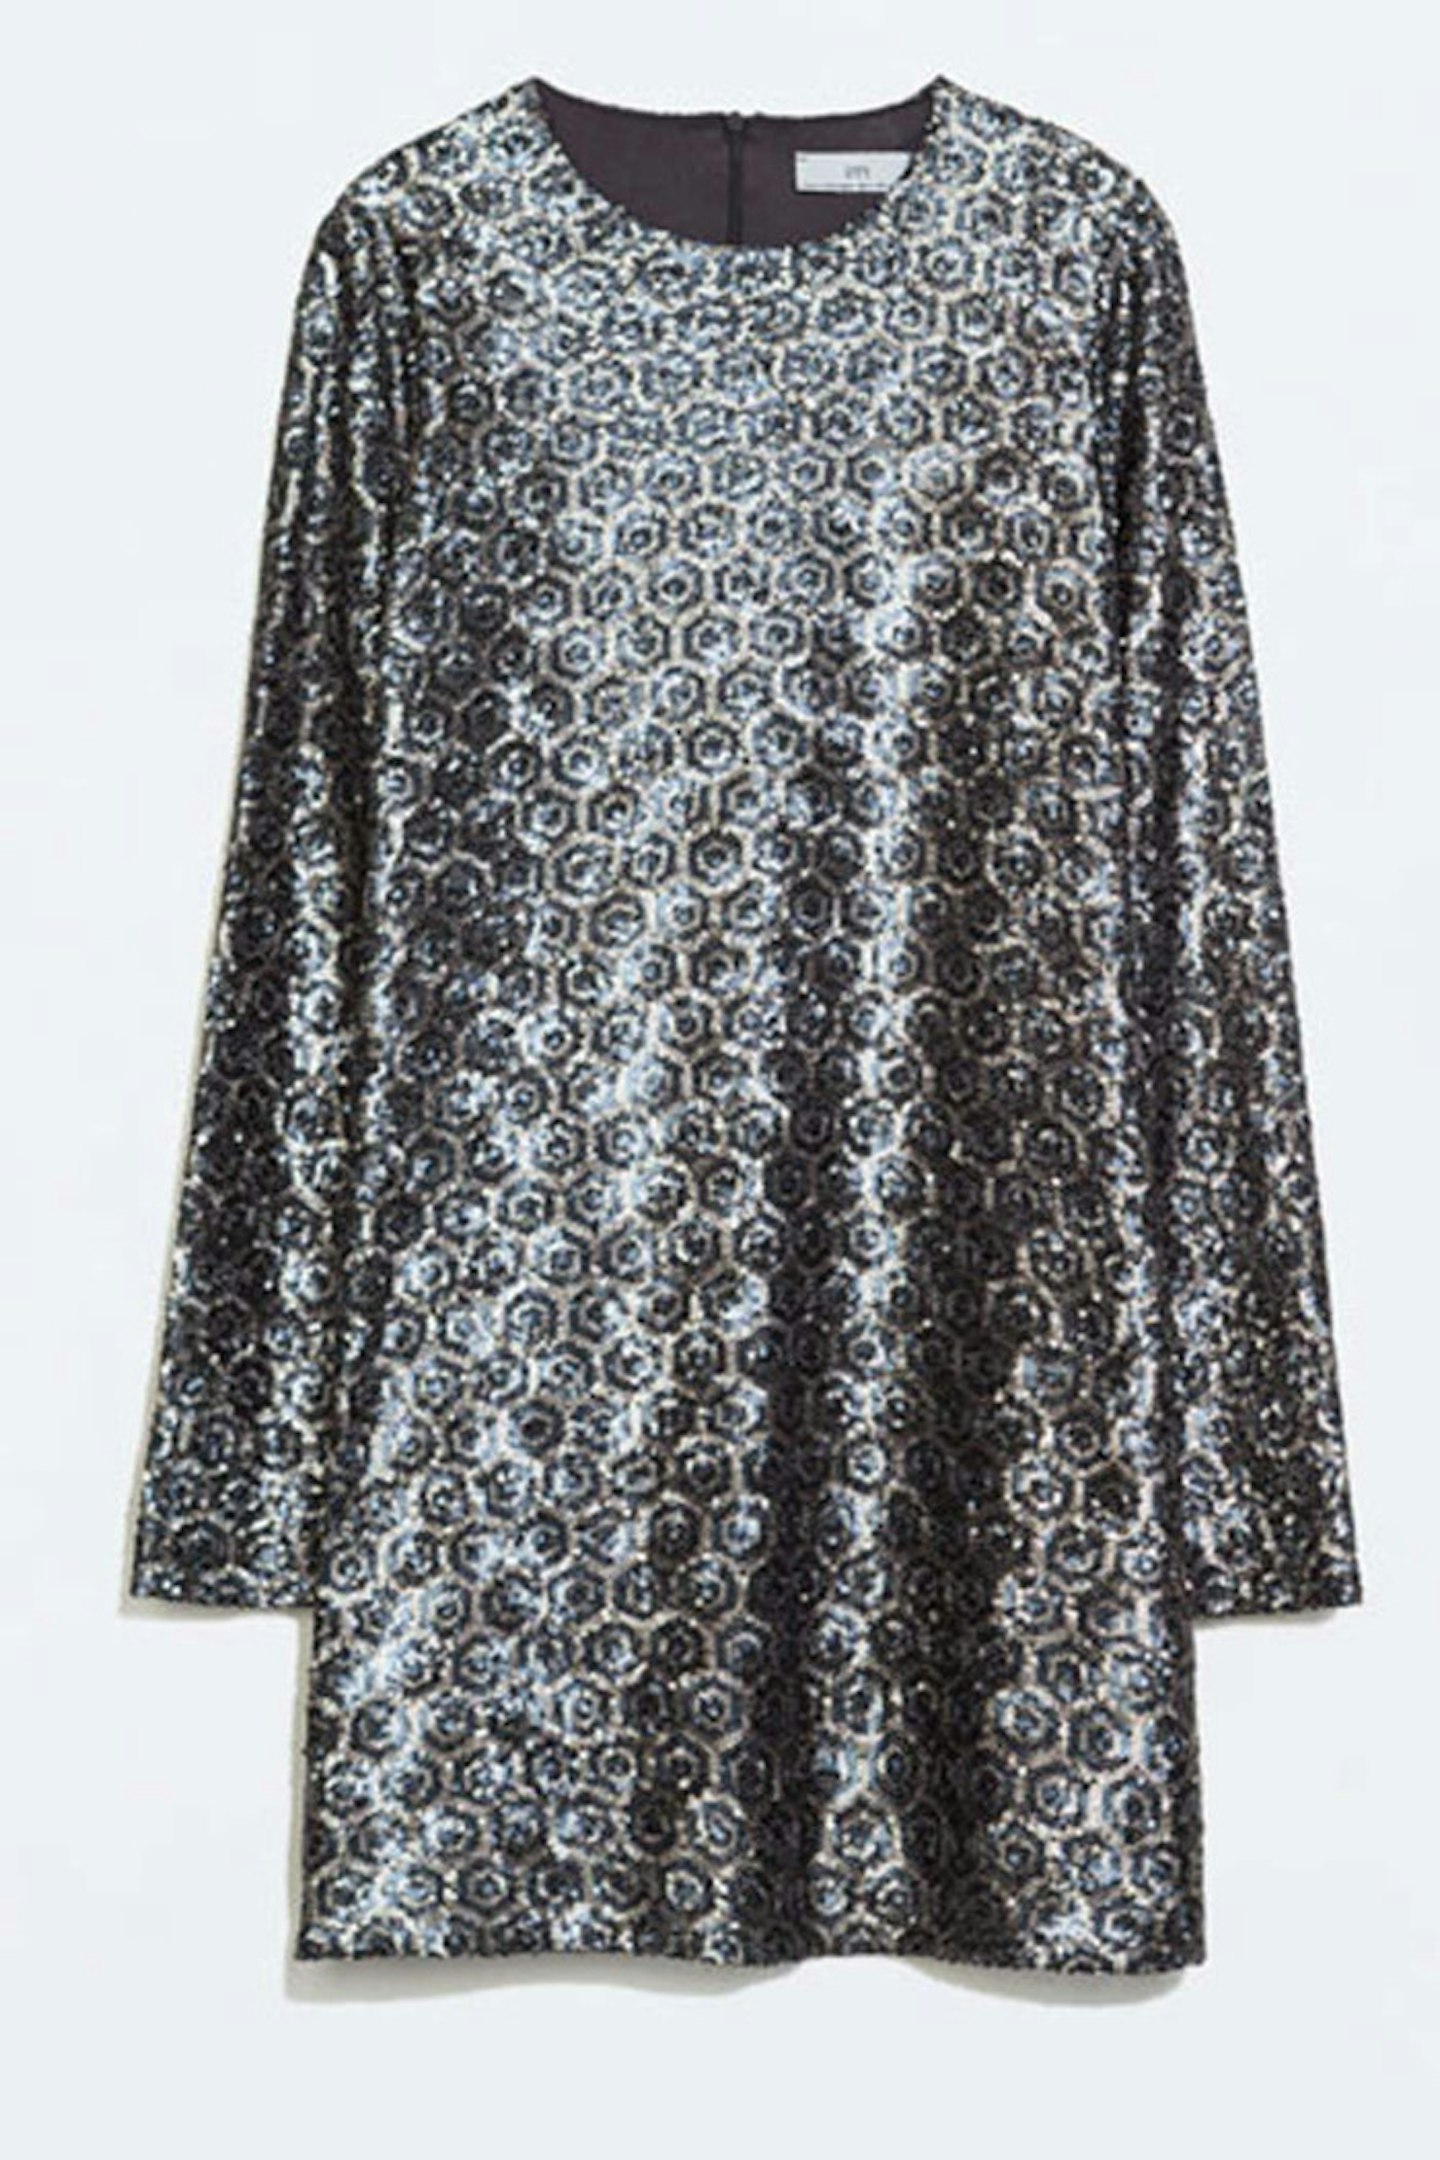 Sequinned Dress, £59.99, Zara